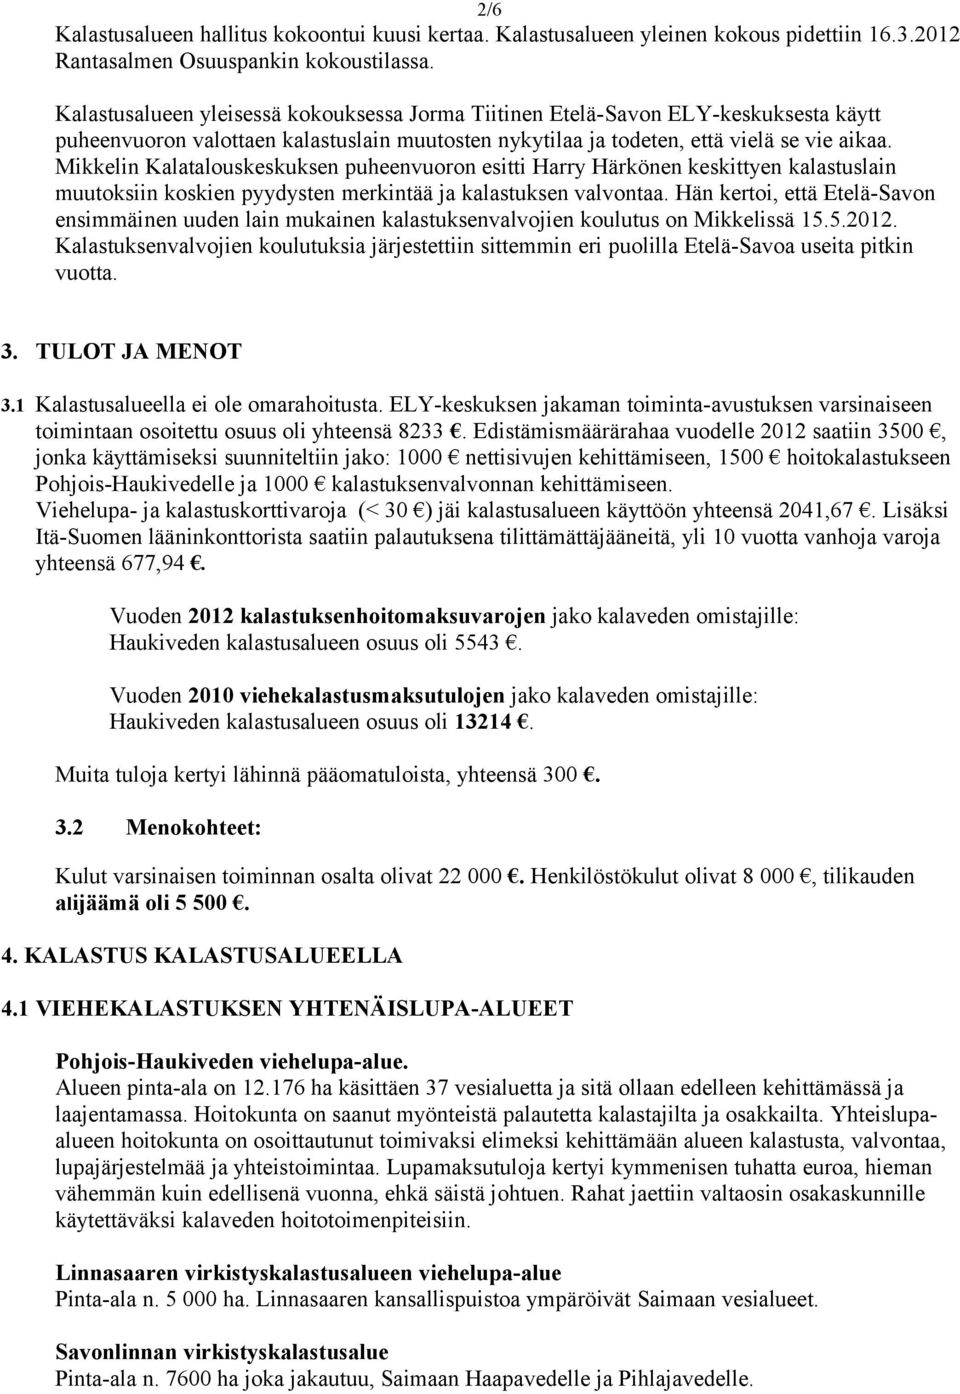 Mikkelin Kalataluskeskuksen puheenvurn esitti Harry Härkönen keskittyen kalastuslain muutksiin kskien pyydysten merkintää ja kalastuksen valvntaa.